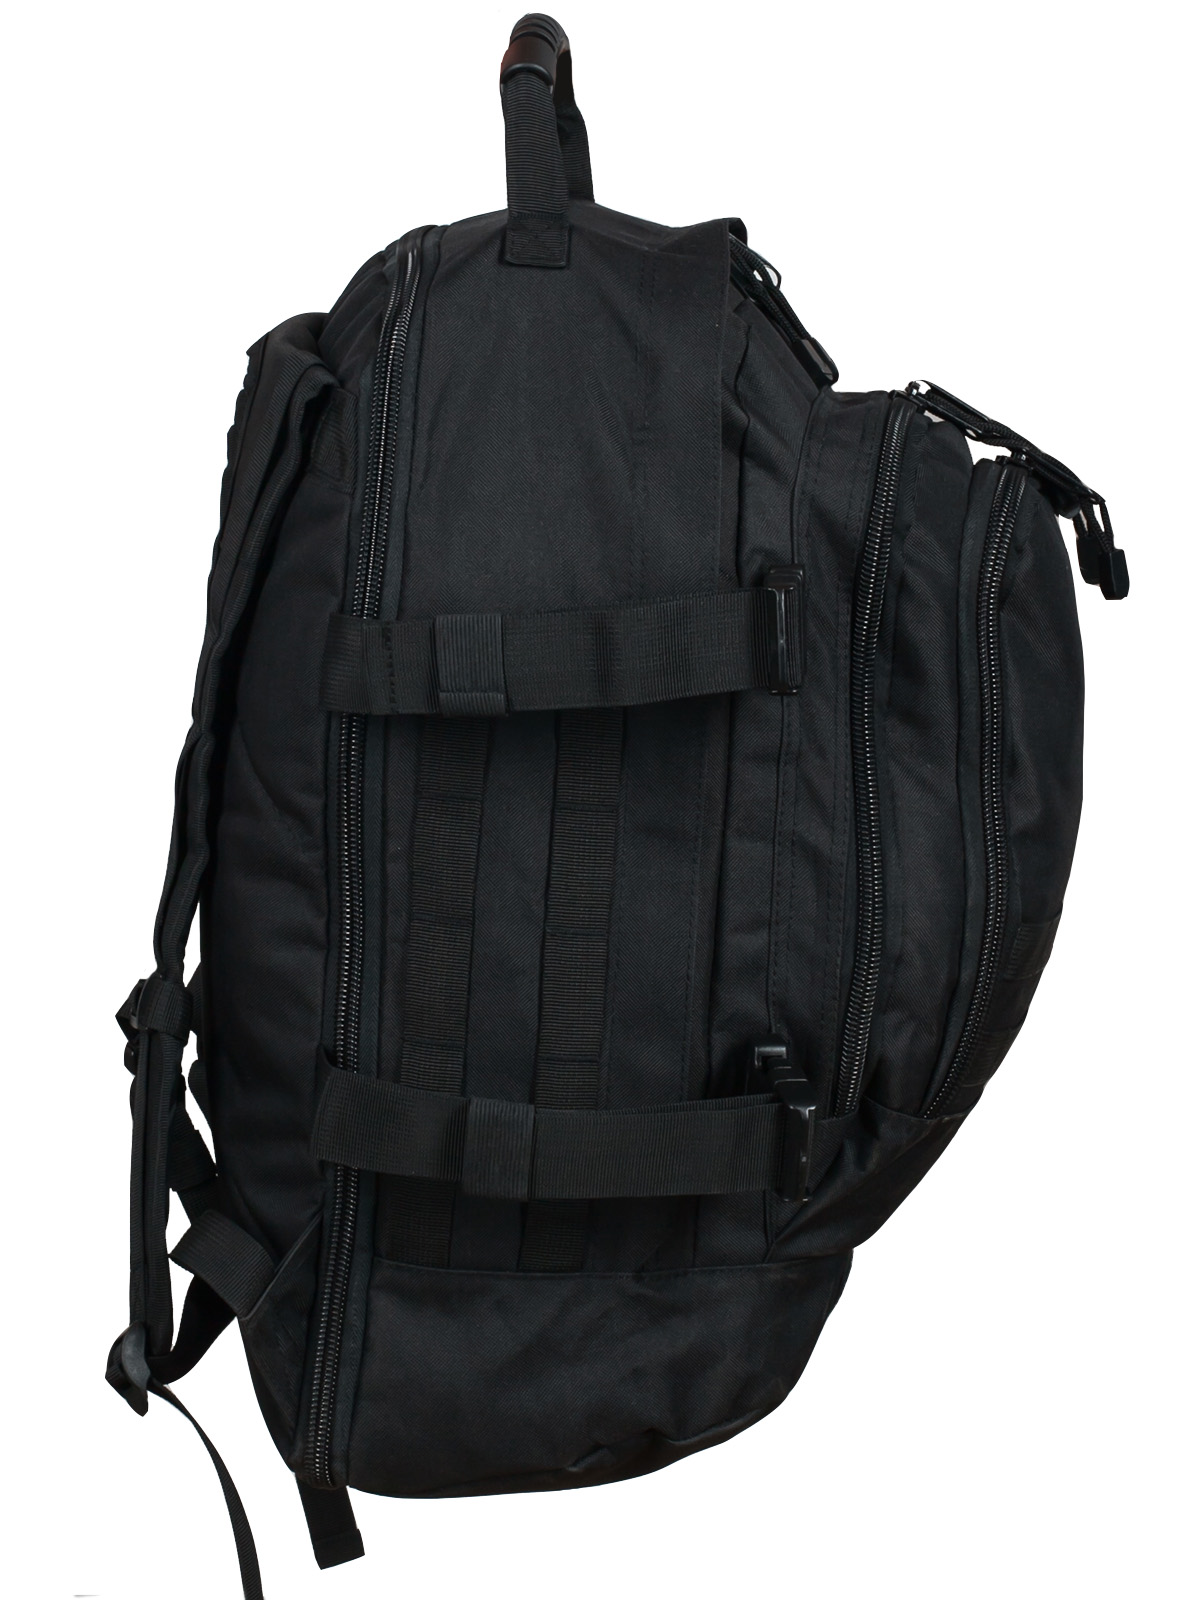 Черный рюкзак универсального назначения 3-Day Expandable Backpack 08002B Black с эмблемой СССР 